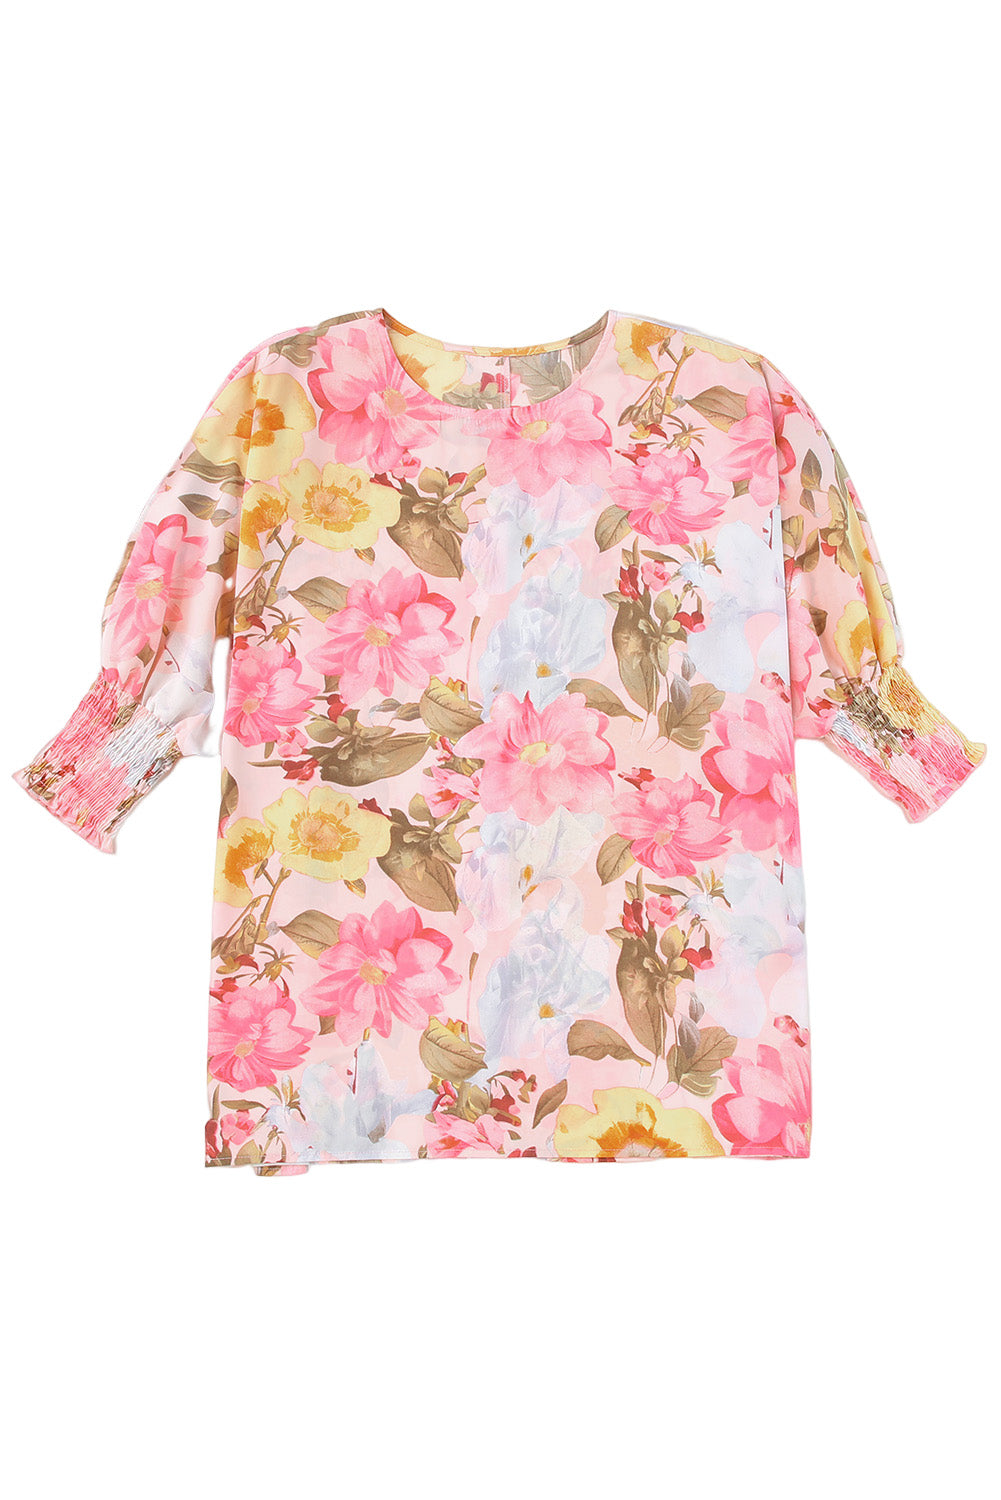 Rožnata ohlapna cvetlična bluza s 3/4 rokavi in ​​manšetami